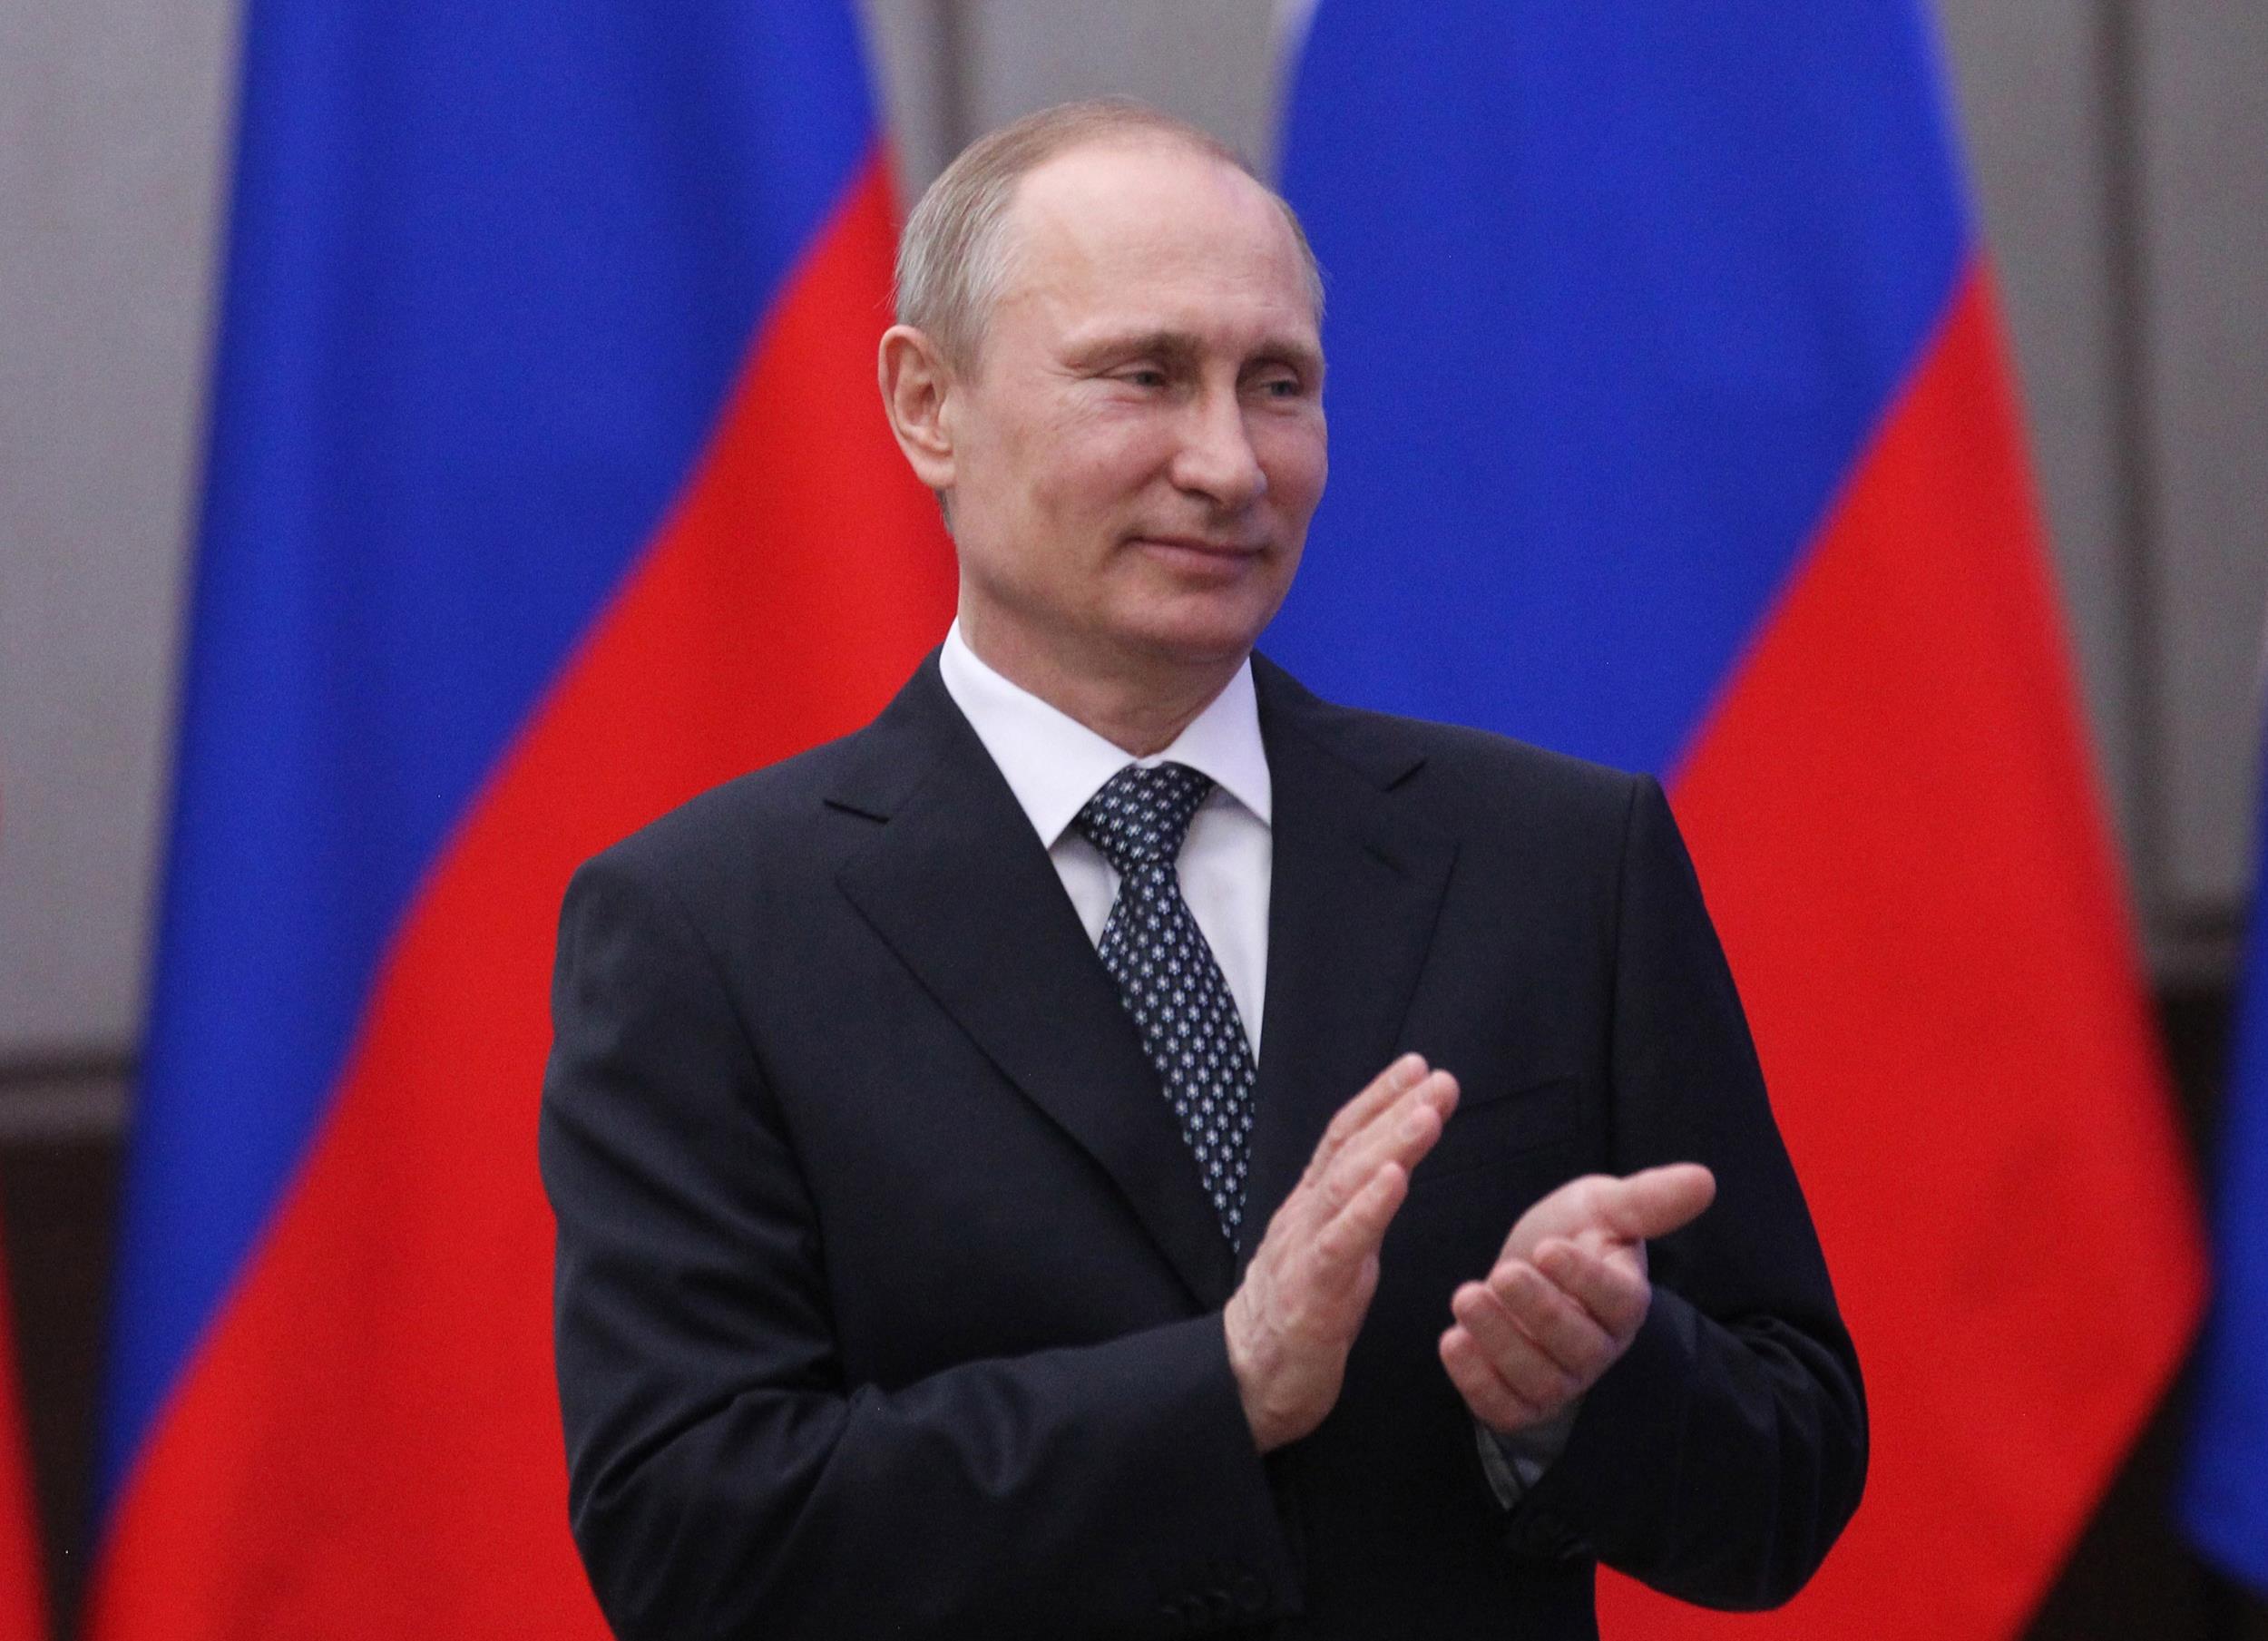 Người quyền lực nhất thế giới là Tổng thống Nga Putin